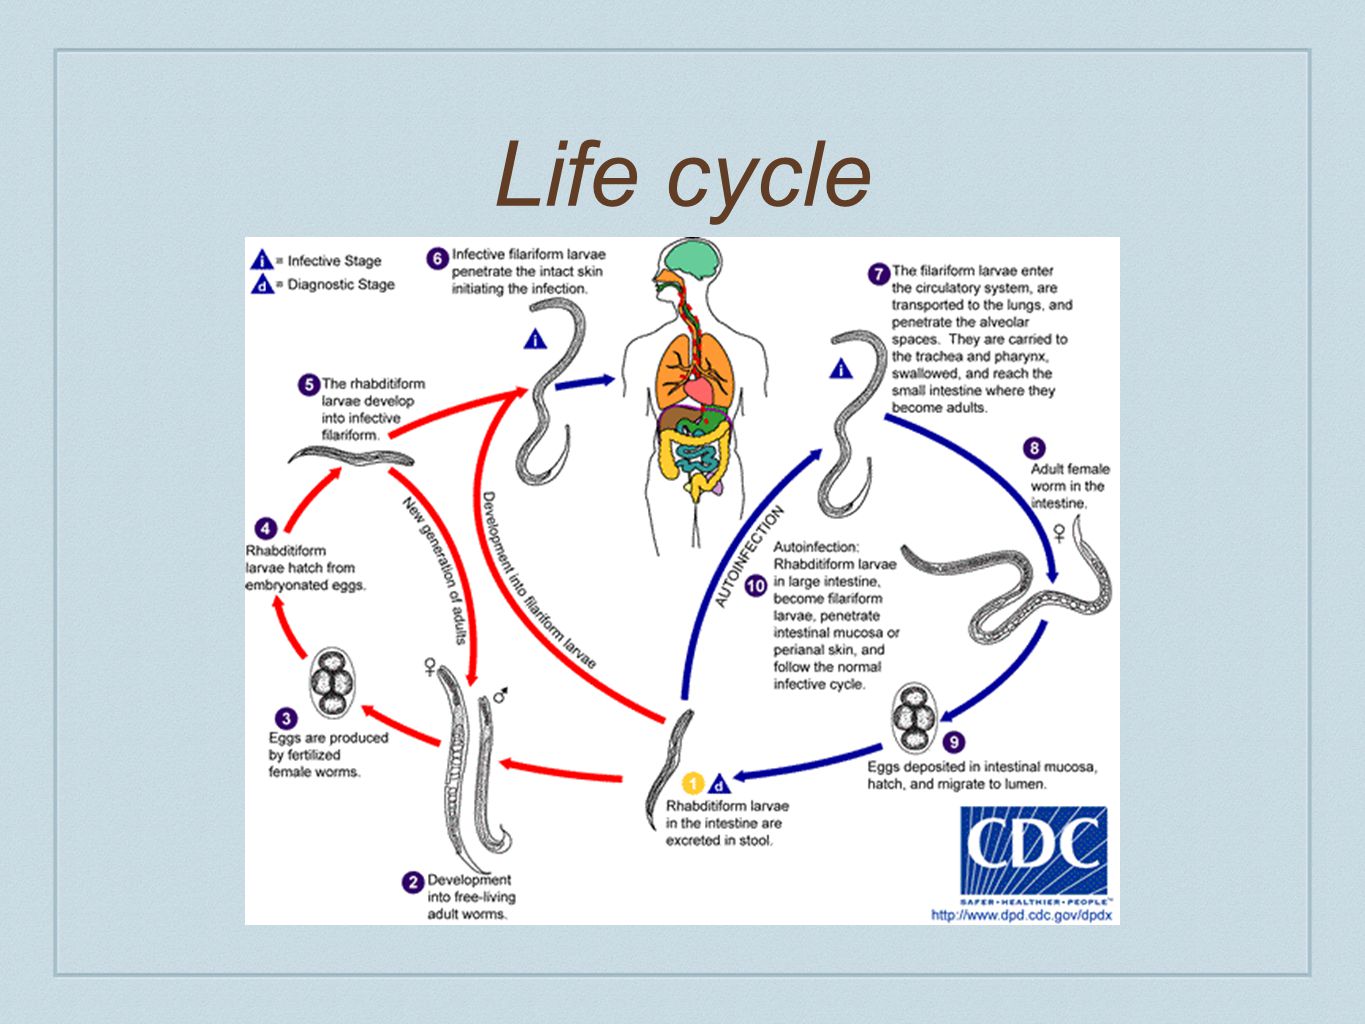 Жизненный цикл угрицы кишечной